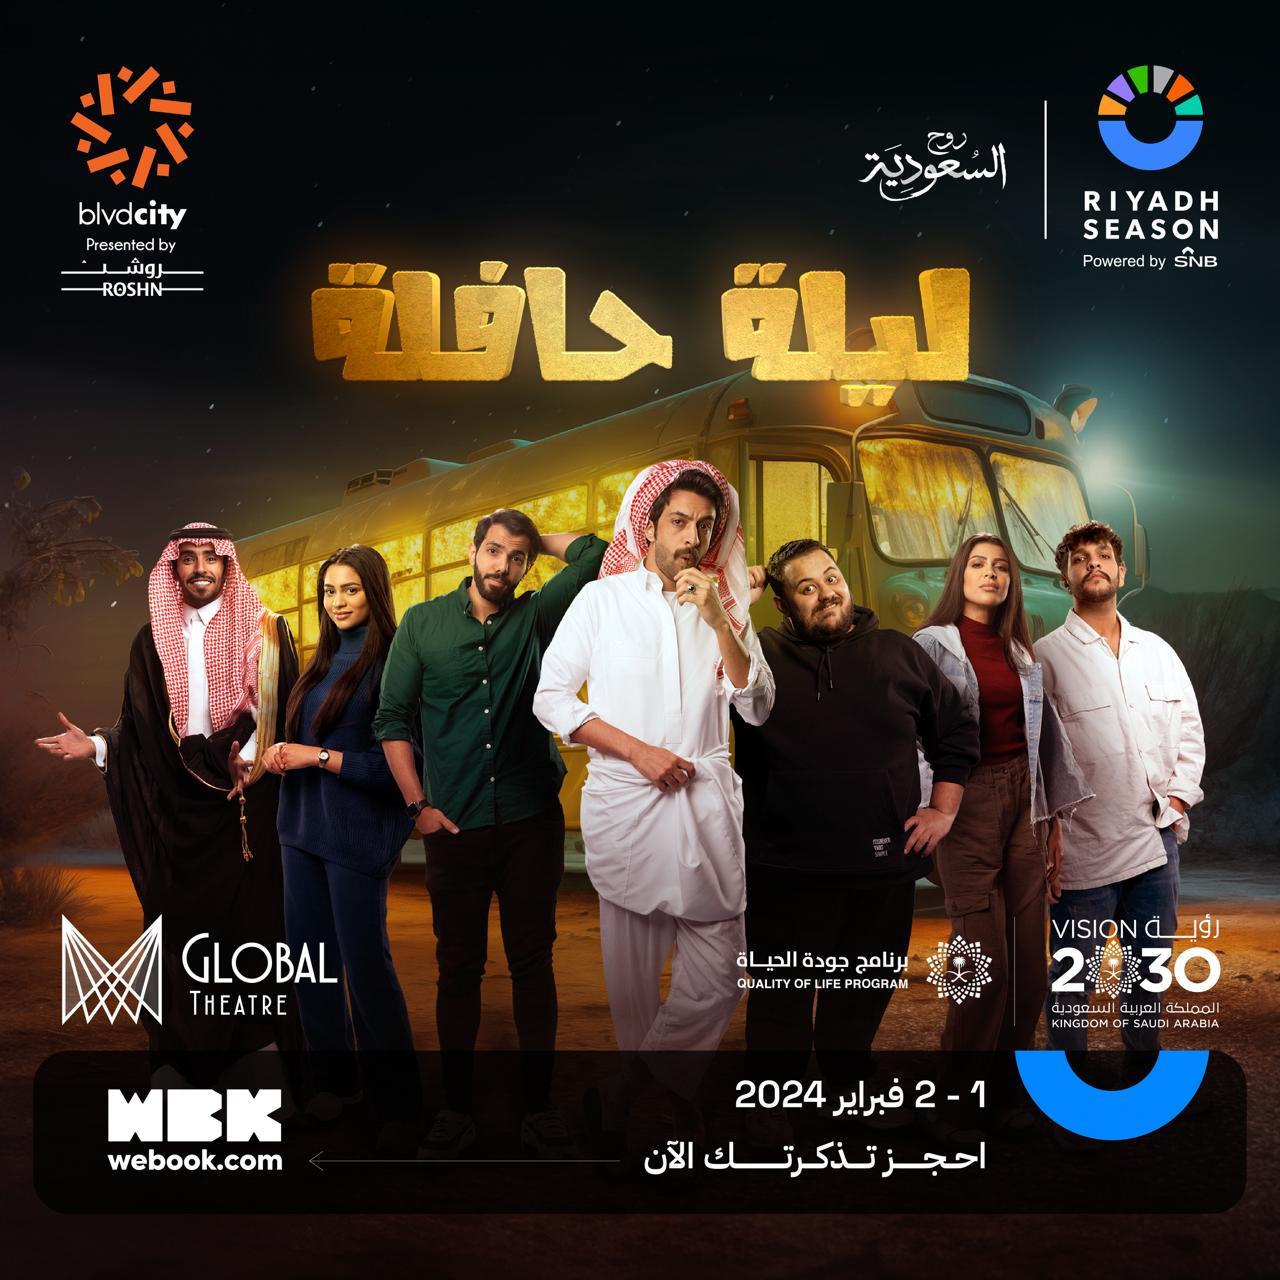 بوستر المسرحية (صفحة موسم الرياض على انستغرام)